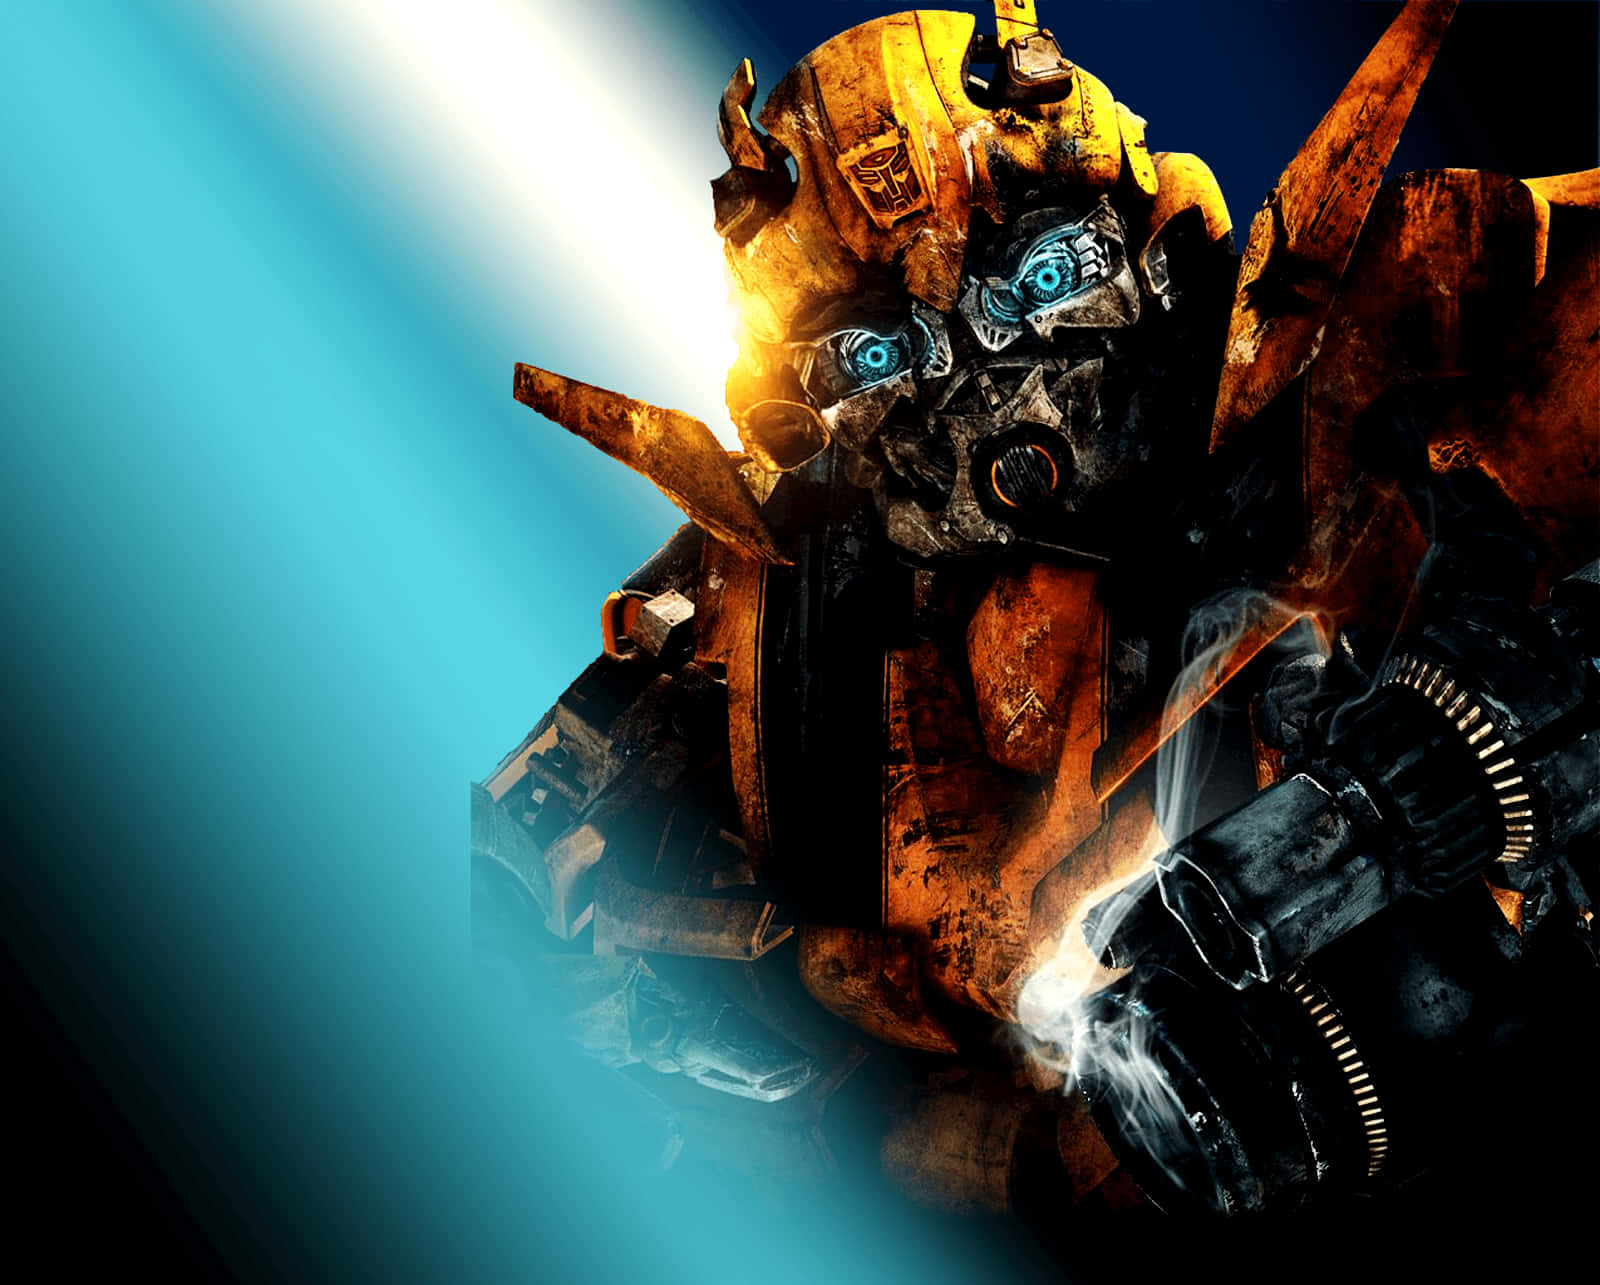 Mötbumblebee, En Fruktansvärd Autobot Från Transformers Universumet. Wallpaper